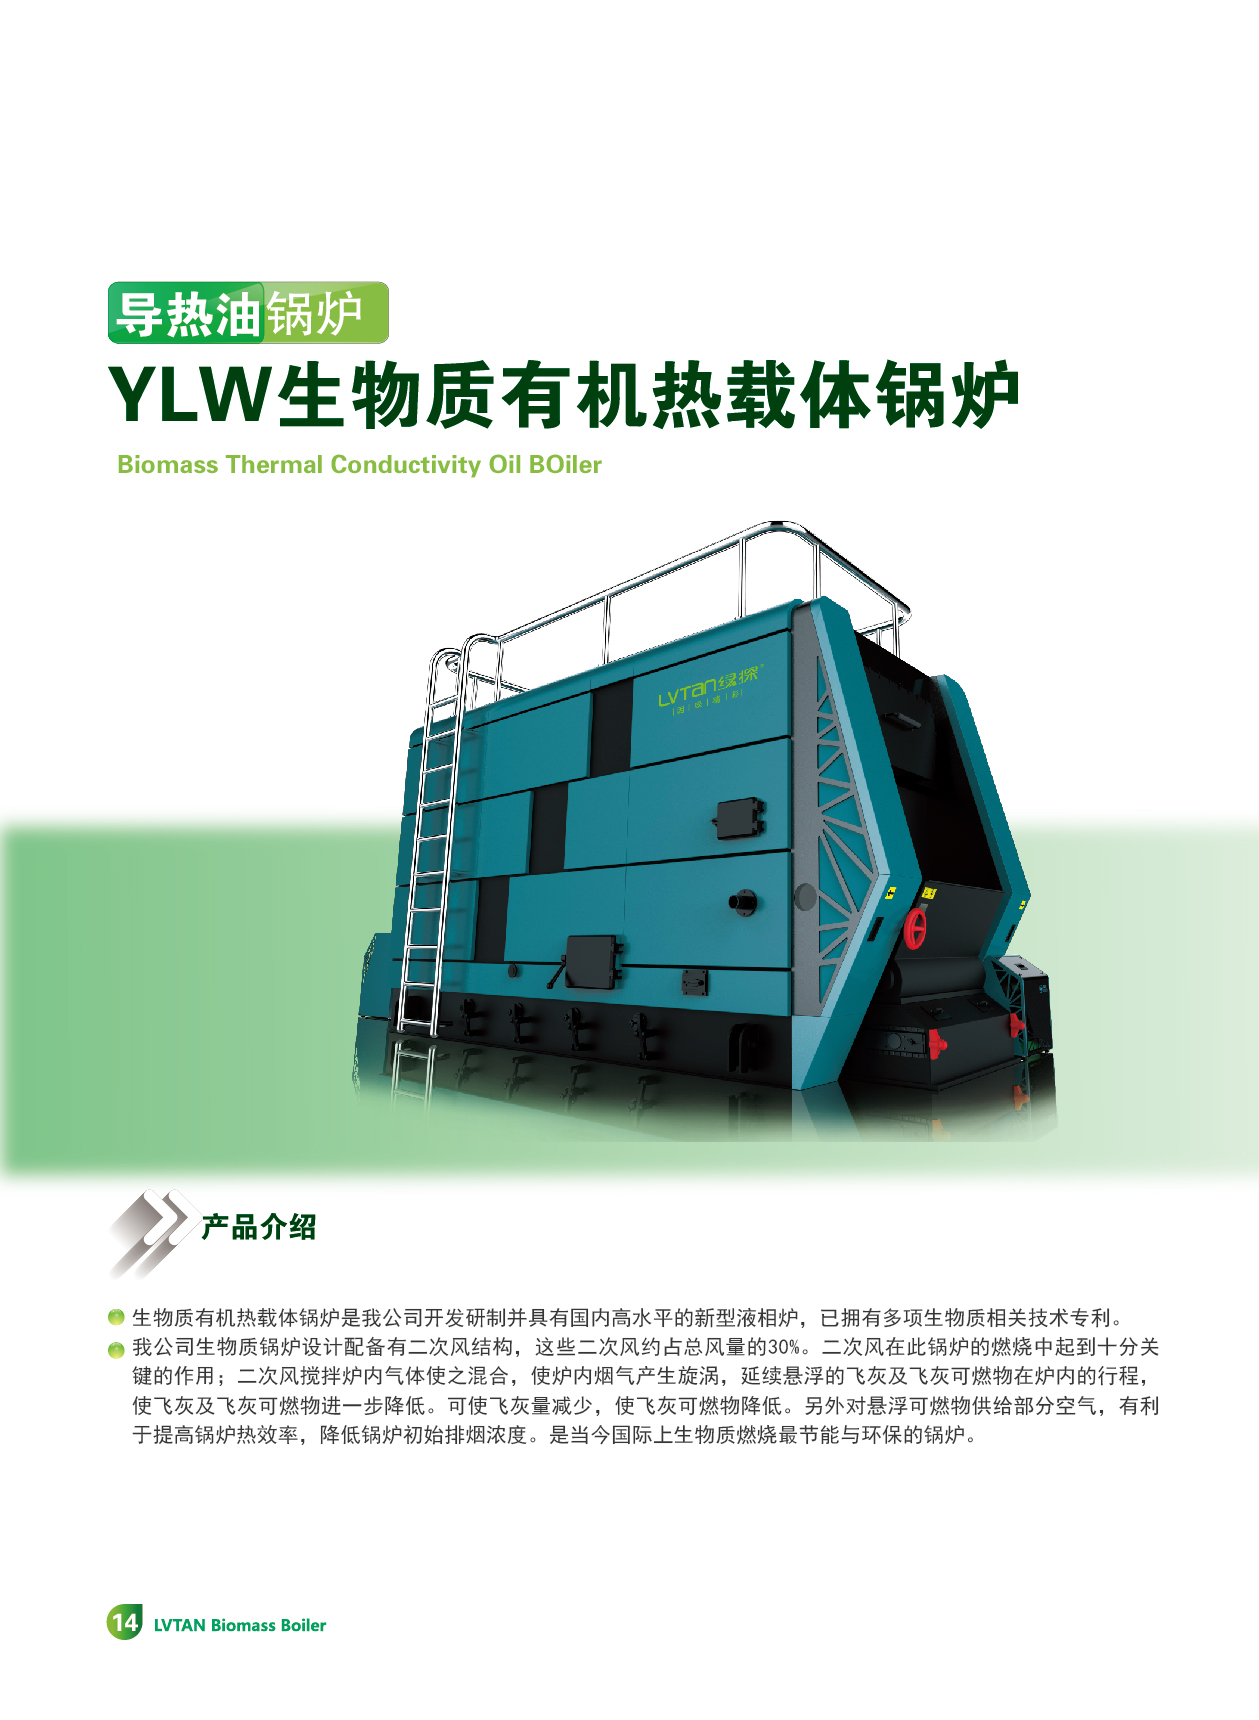 YLW生物质有机热载体锅炉